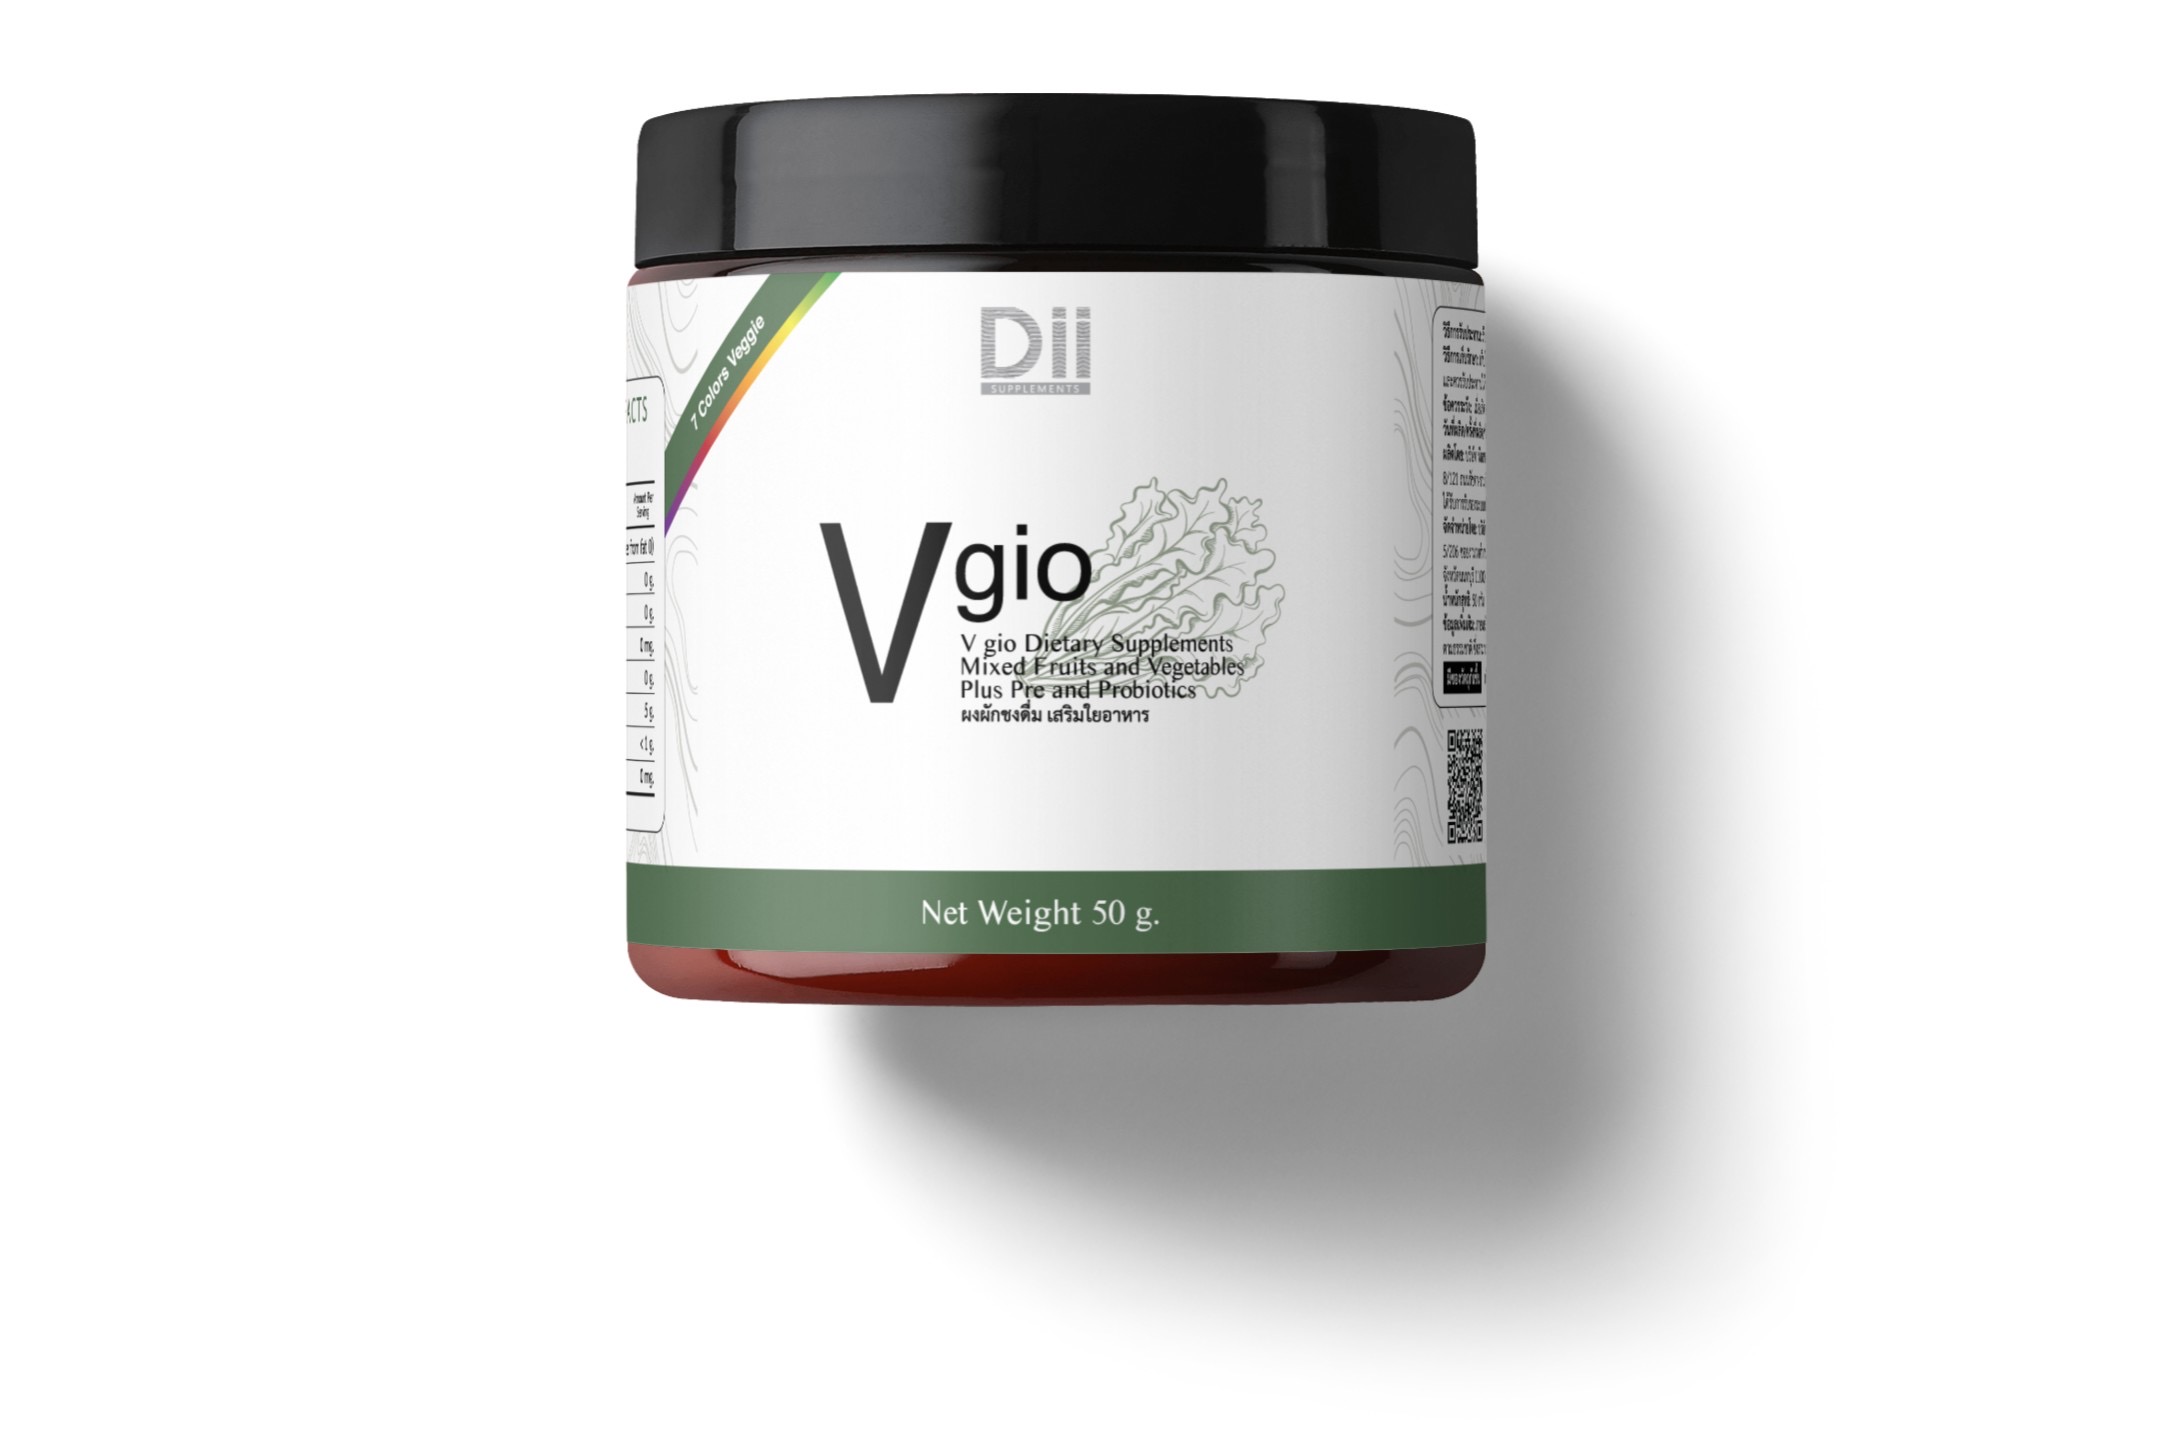 Dii Vgio (50g.) ผงผักผลไม้รวมชงดื่ม